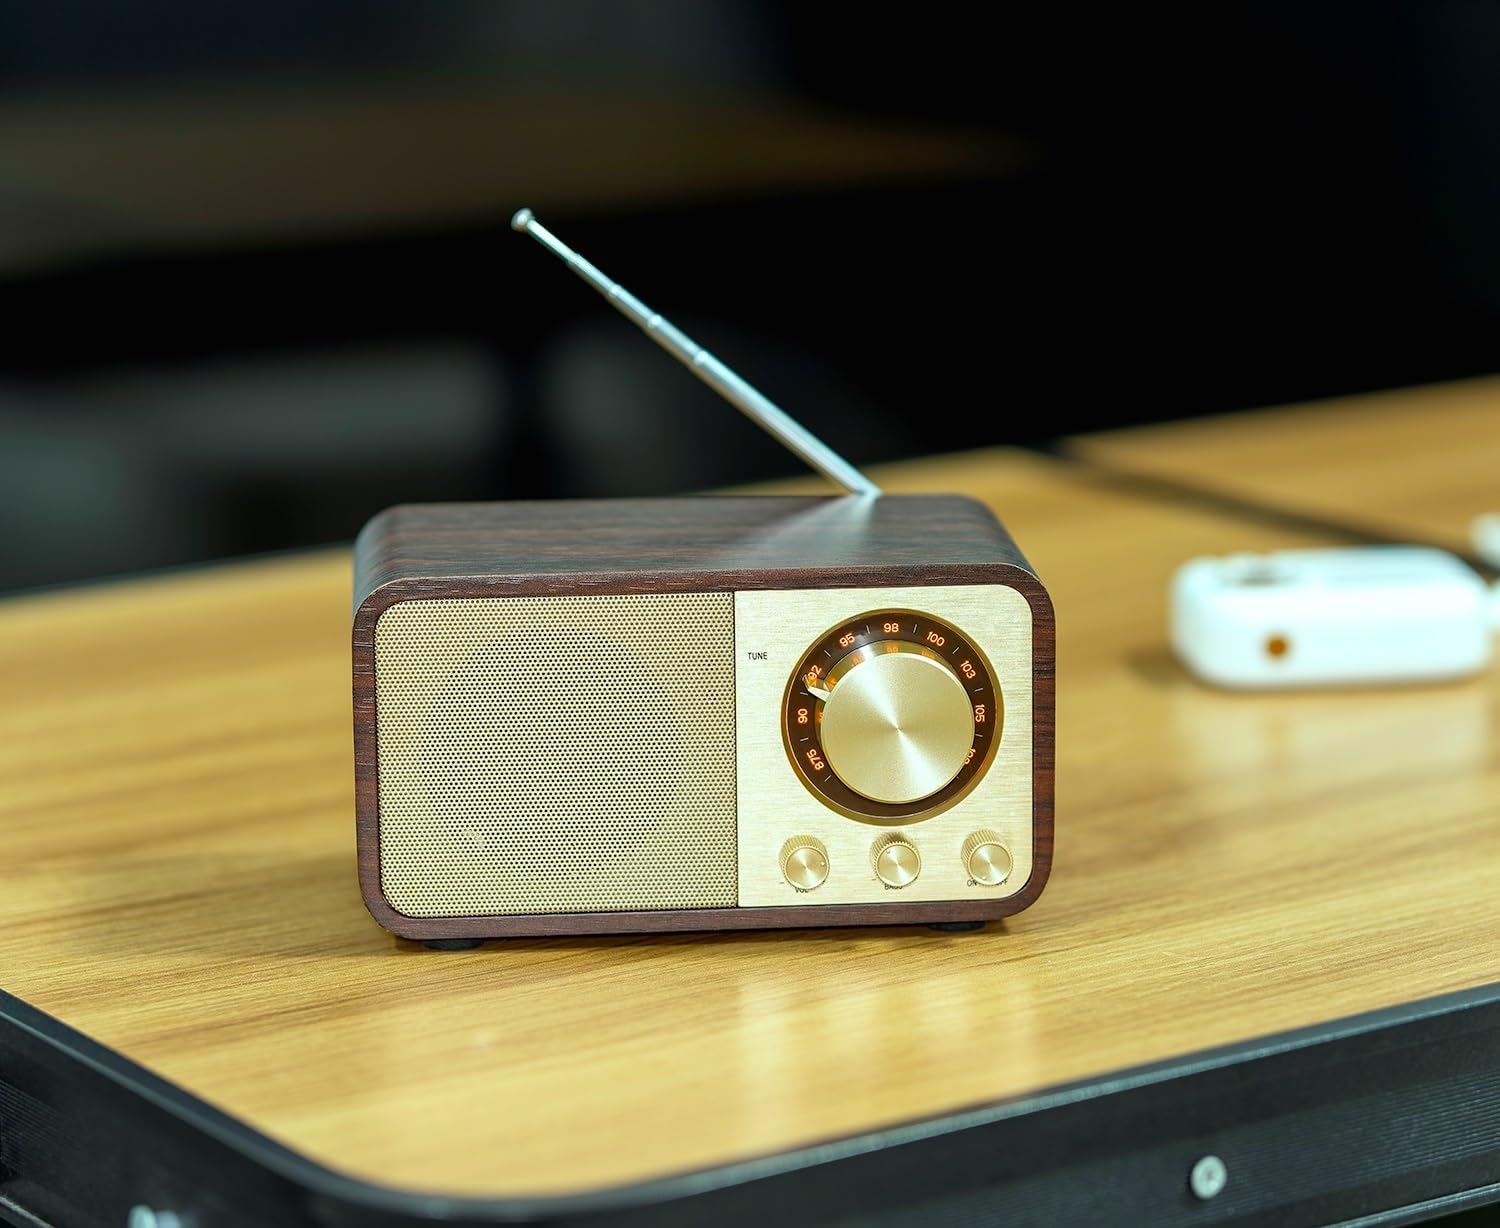  Bentmax Radio FM con altavoz Bluetooth retro con Bluetooth Radio  vintage con memoria SD/USB, función de reproductor de música, transmisión  inalámbrica desde smartphone, reproducción de 10 horas (nogal) : Electrónica